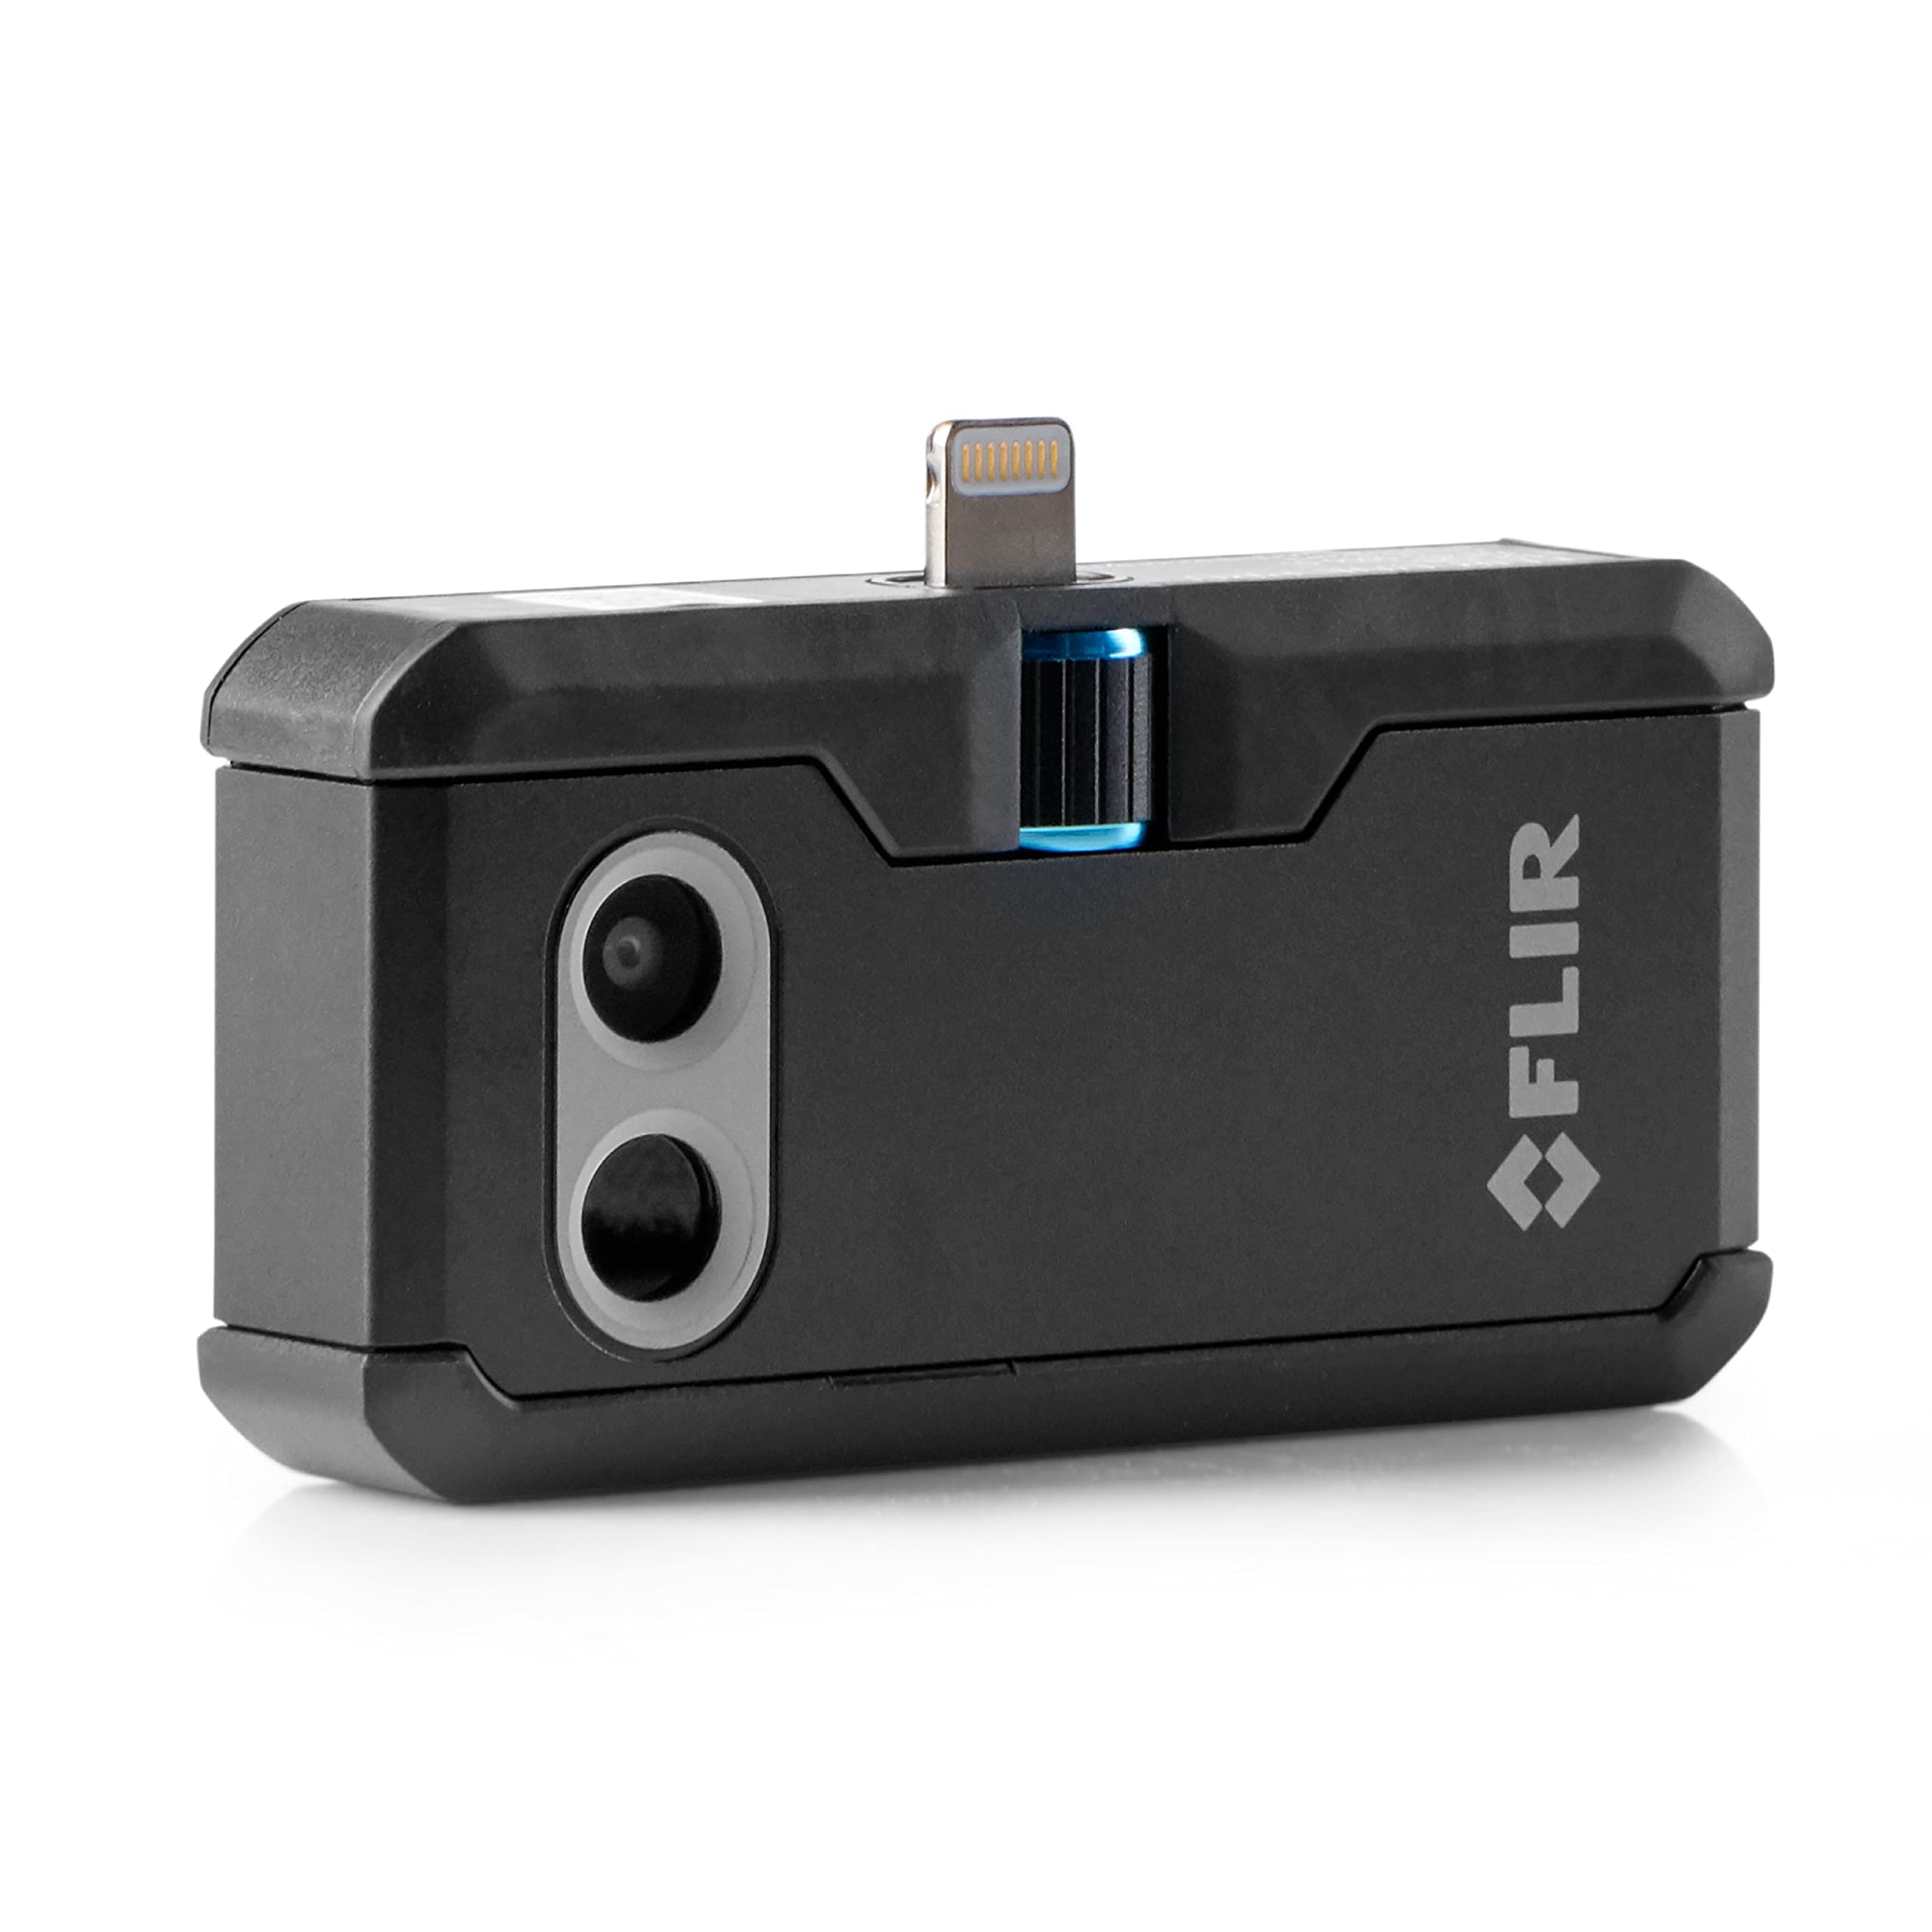 FLIR ONE Pro - iOS - Câmera térmica de nível profissional para smartphones - com tecnologia VividIR e MSX Image Enhancement